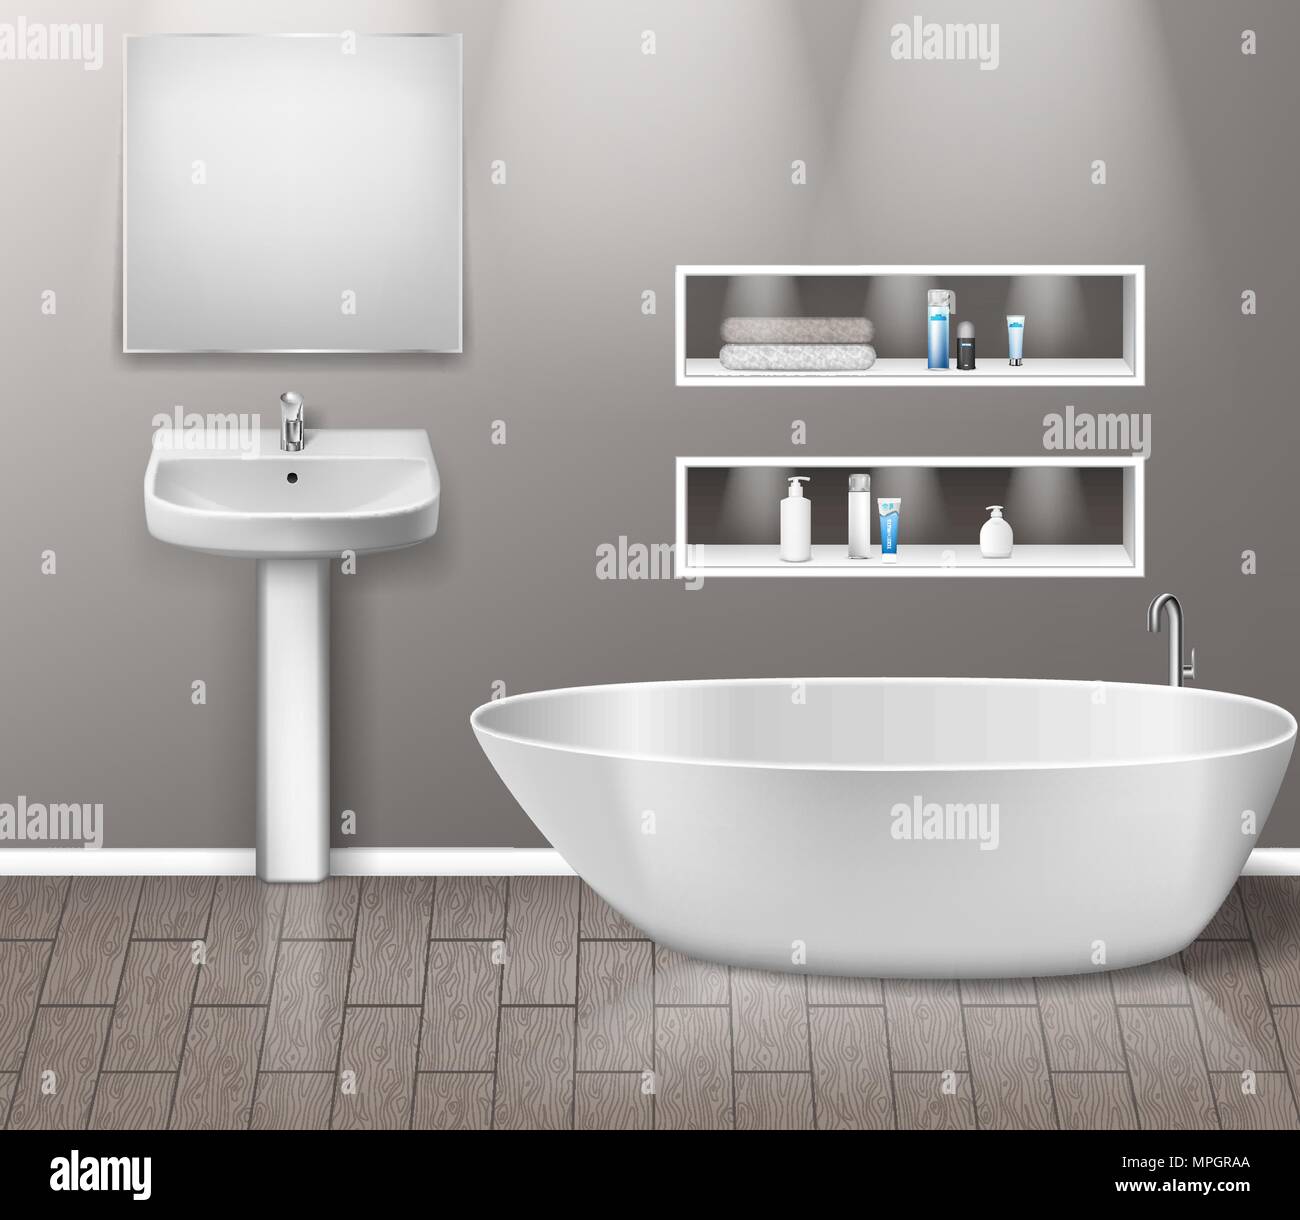 Meubles Meubles d'intérieur salle de bains réaliste moderne avec salle de bains lavabo, miroir, étagères, d'une baignoire et d'éléments de décor sur mur gris avec plancher en bois. vector illustration Illustration de Vecteur